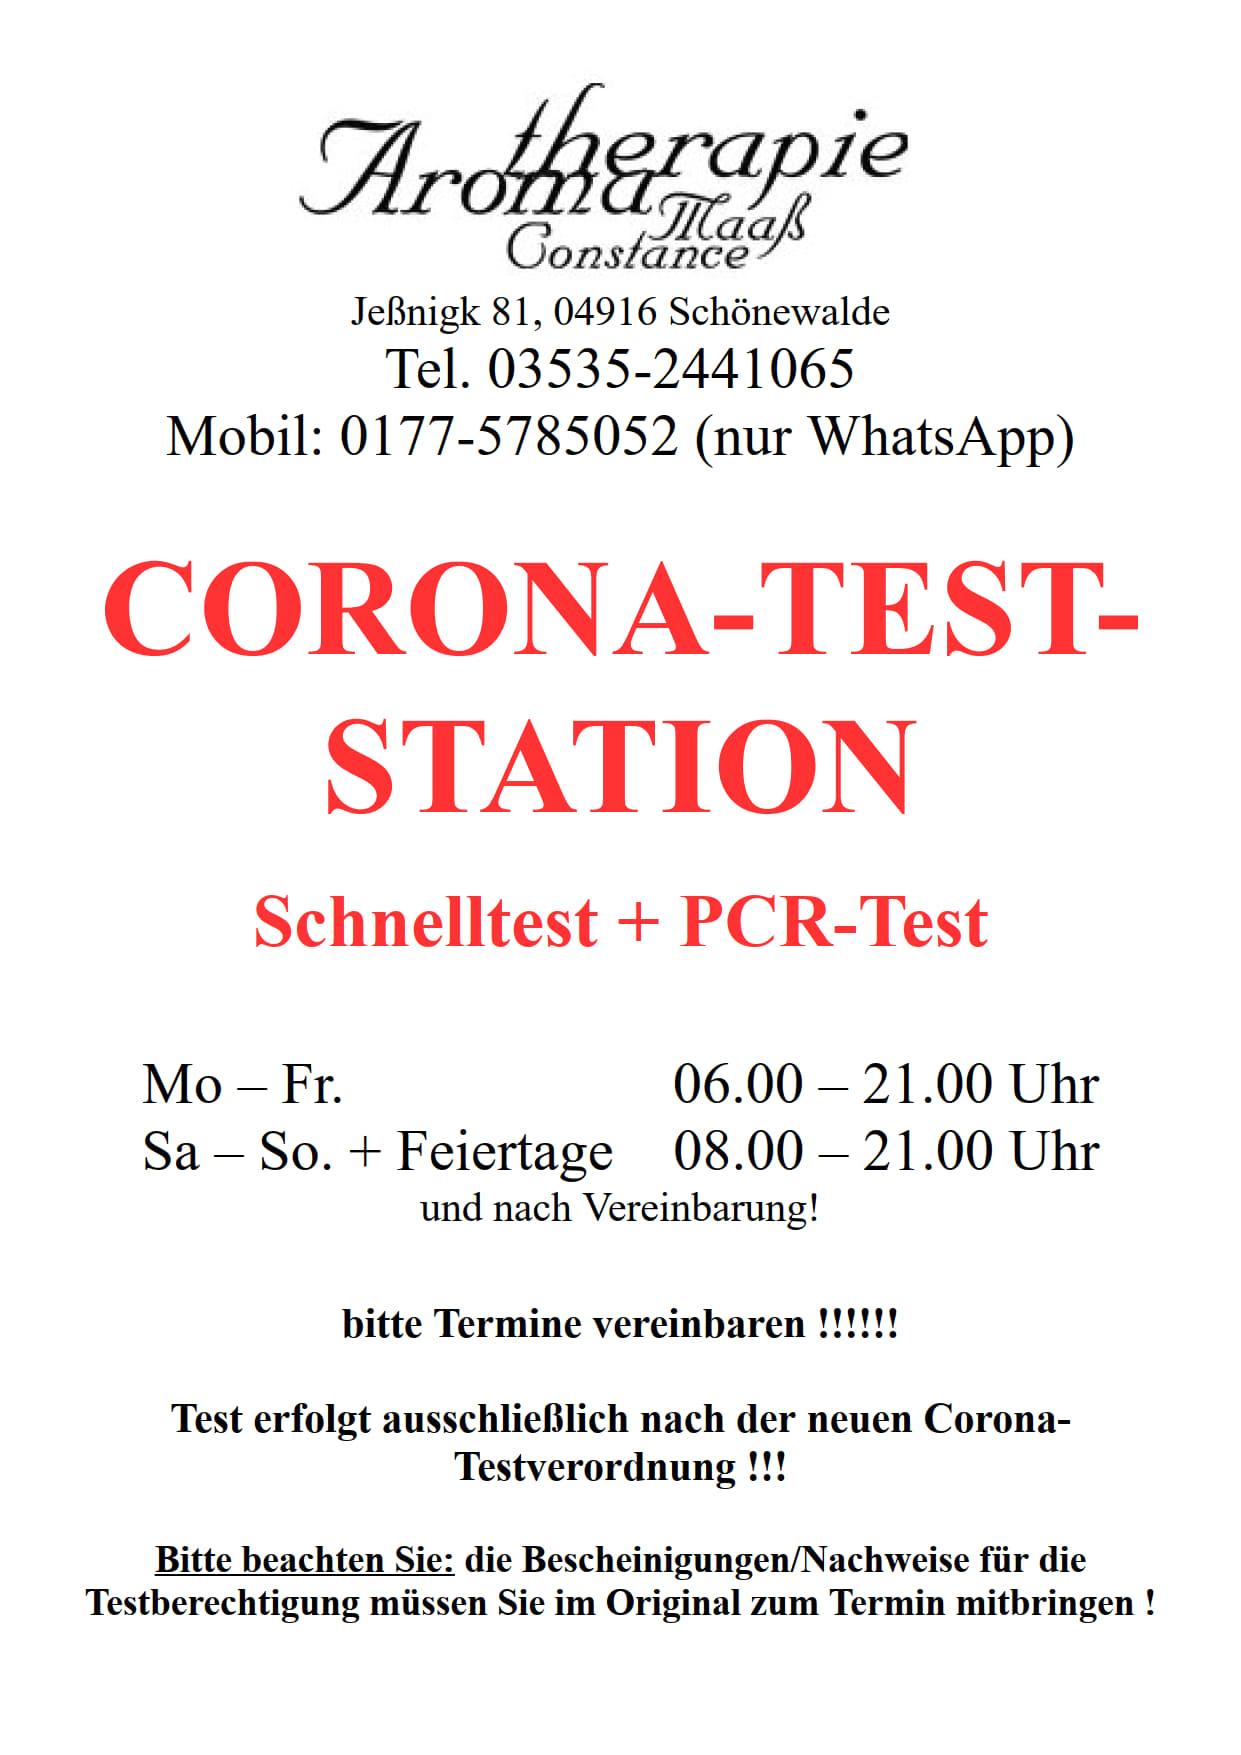 Corona-Test-Station Jeßnigk